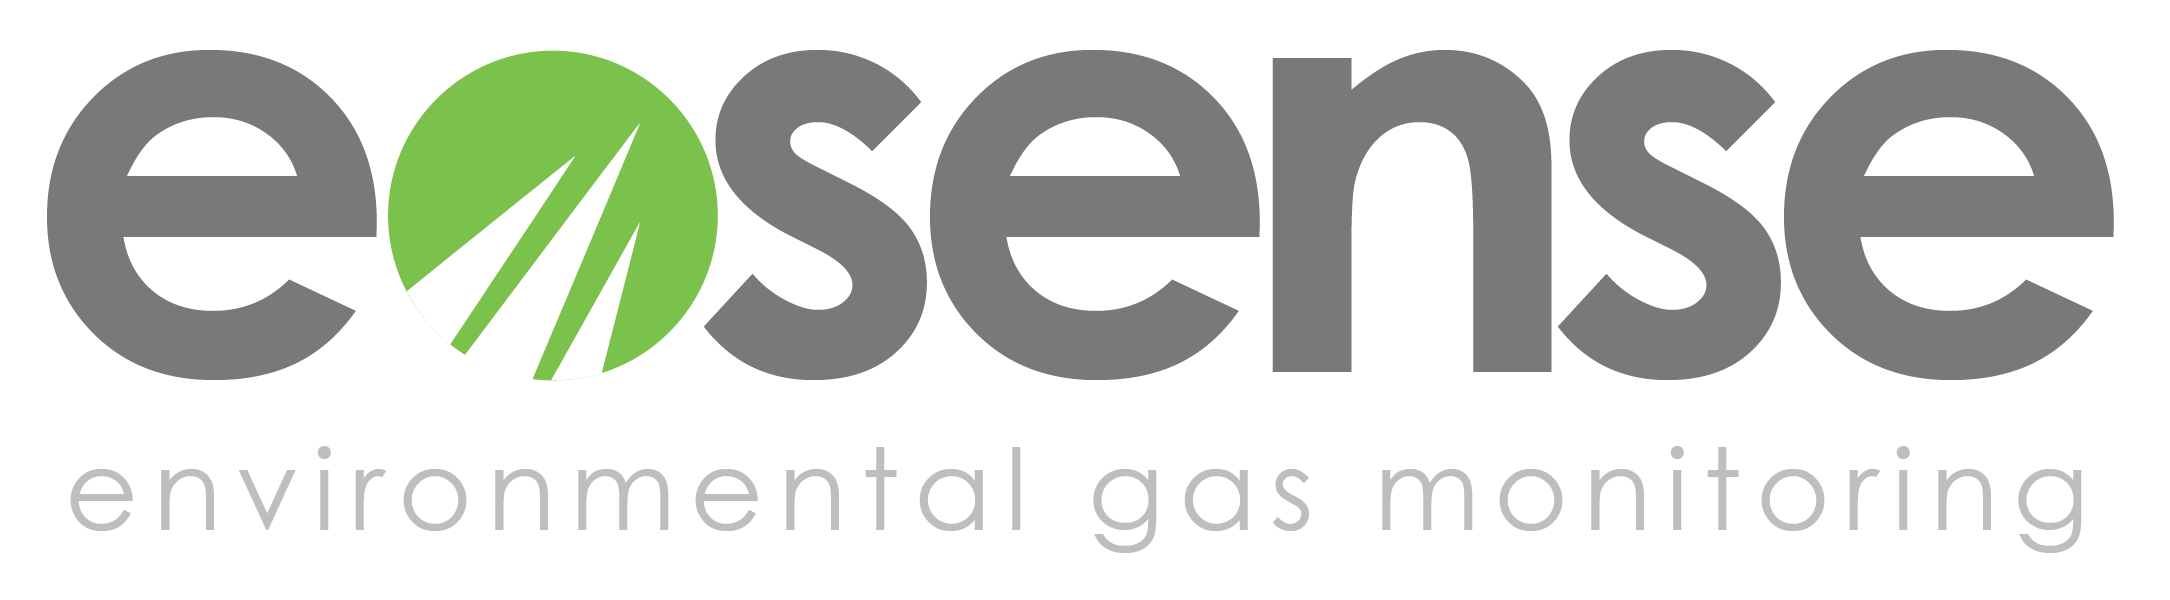 Eosense logo